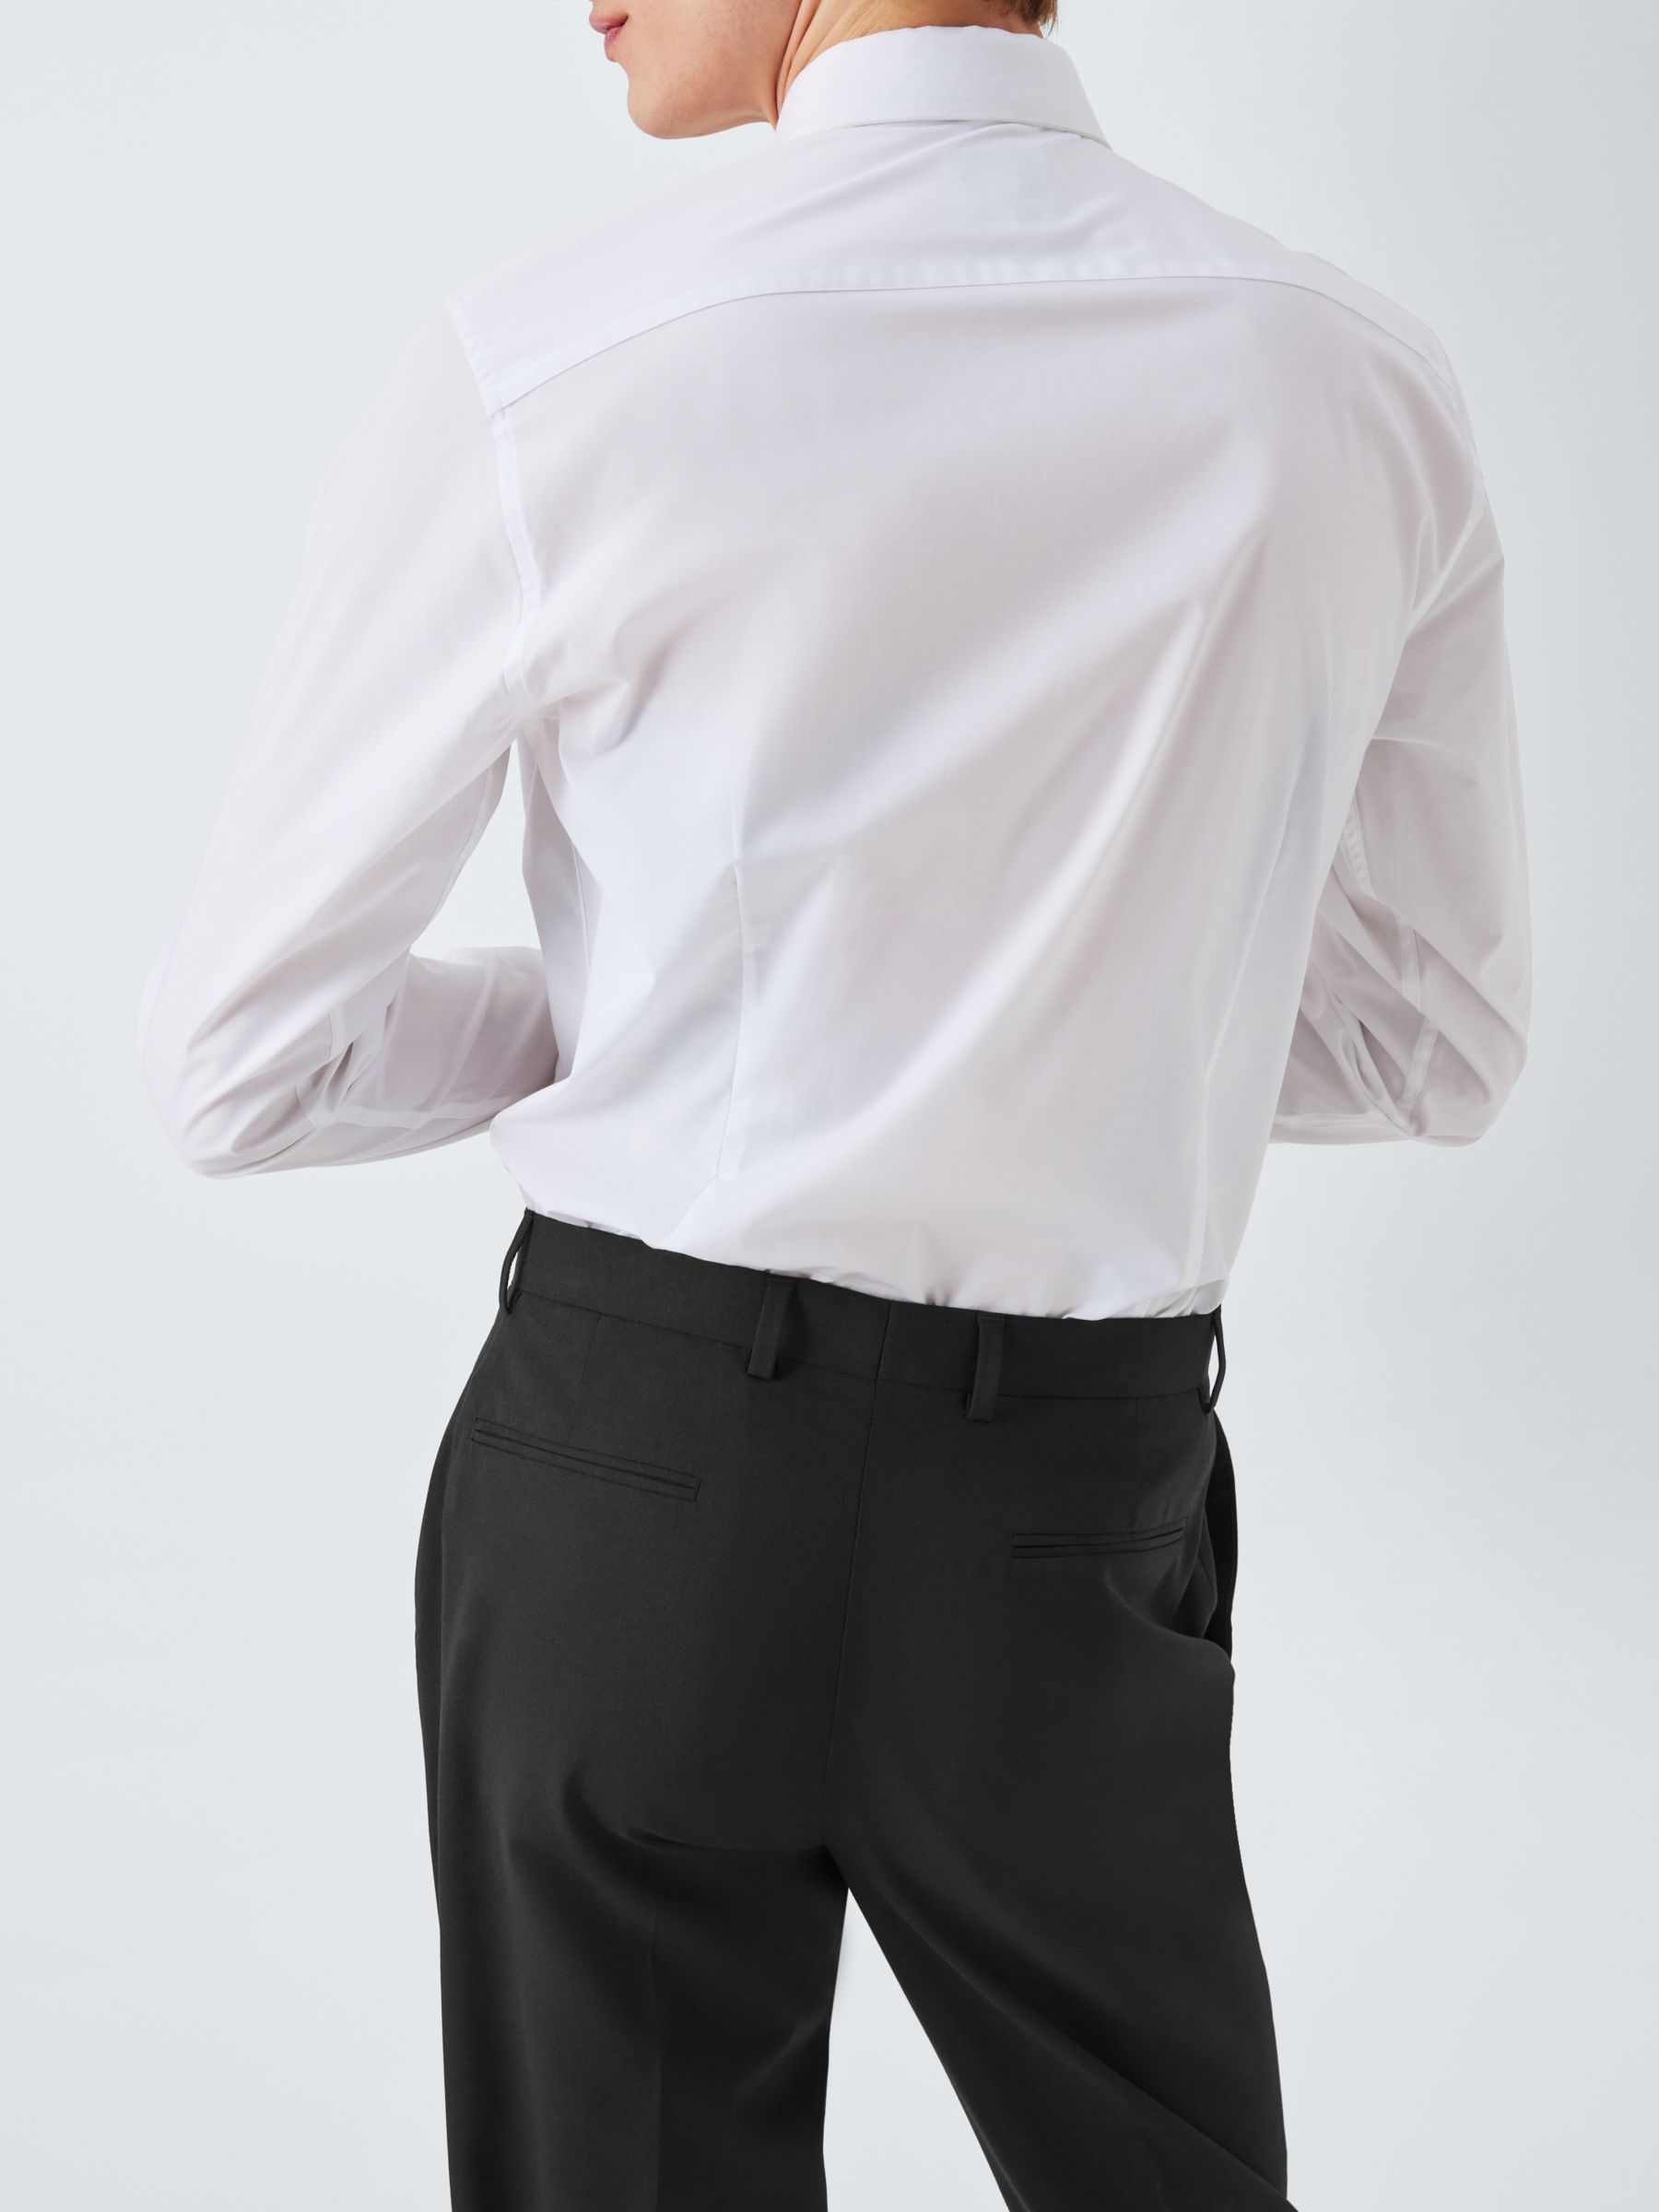 Buy Kin Wool Blend Slim Fit Suit Trousers, Black Online at johnlewis.com